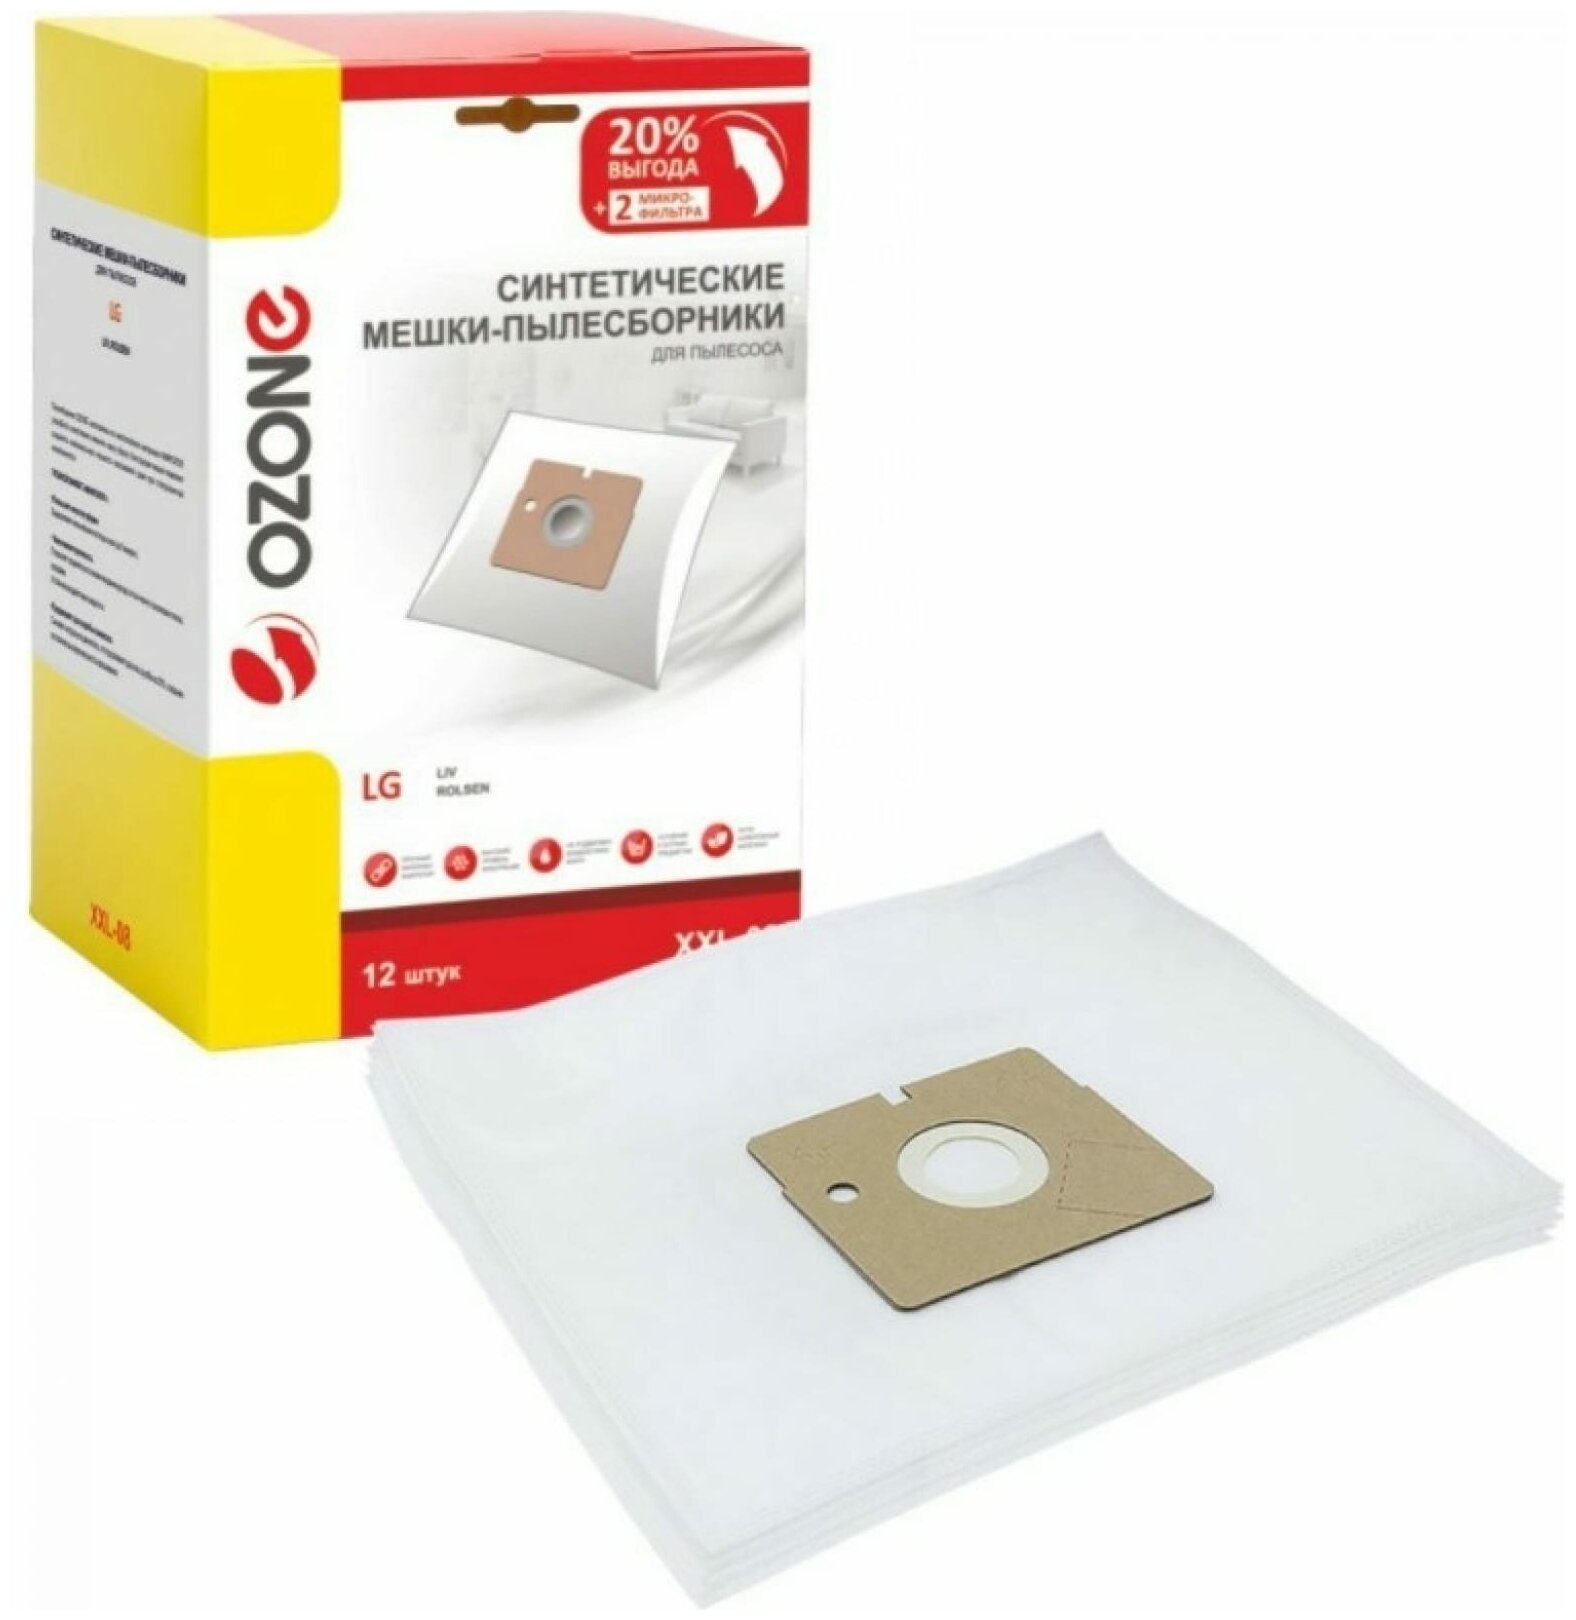 XXL-08 Мешки-пылесборники Ozone синтетические для пылесоса 12 шт + 2 микрофильтра